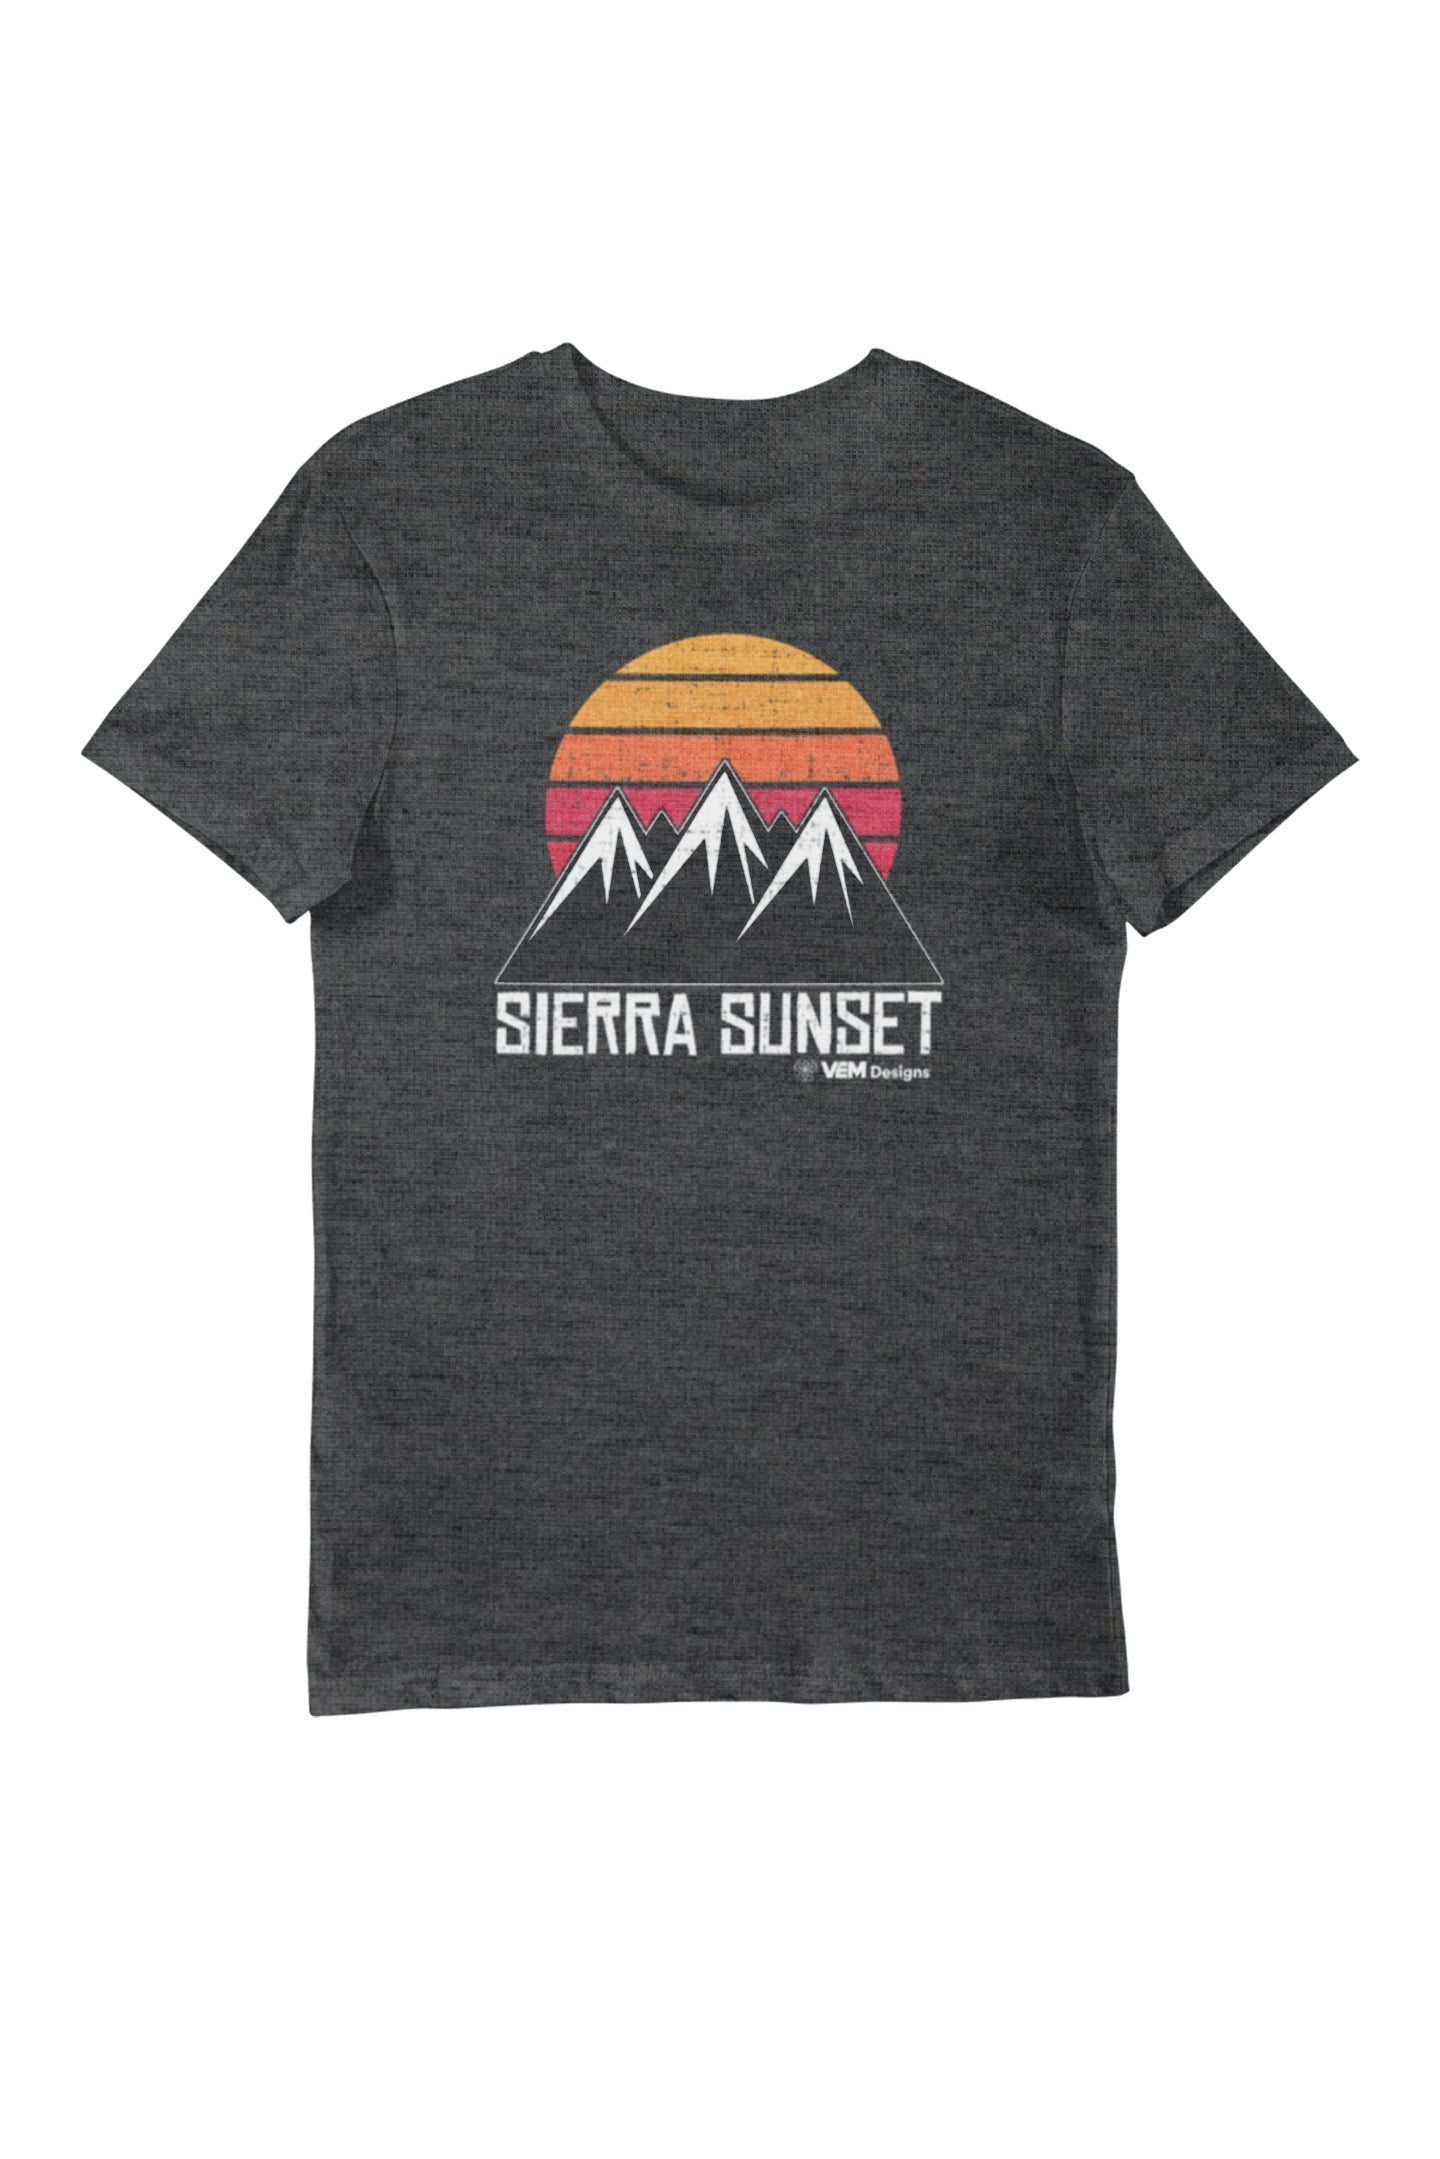 Sierra Sunset - Women's